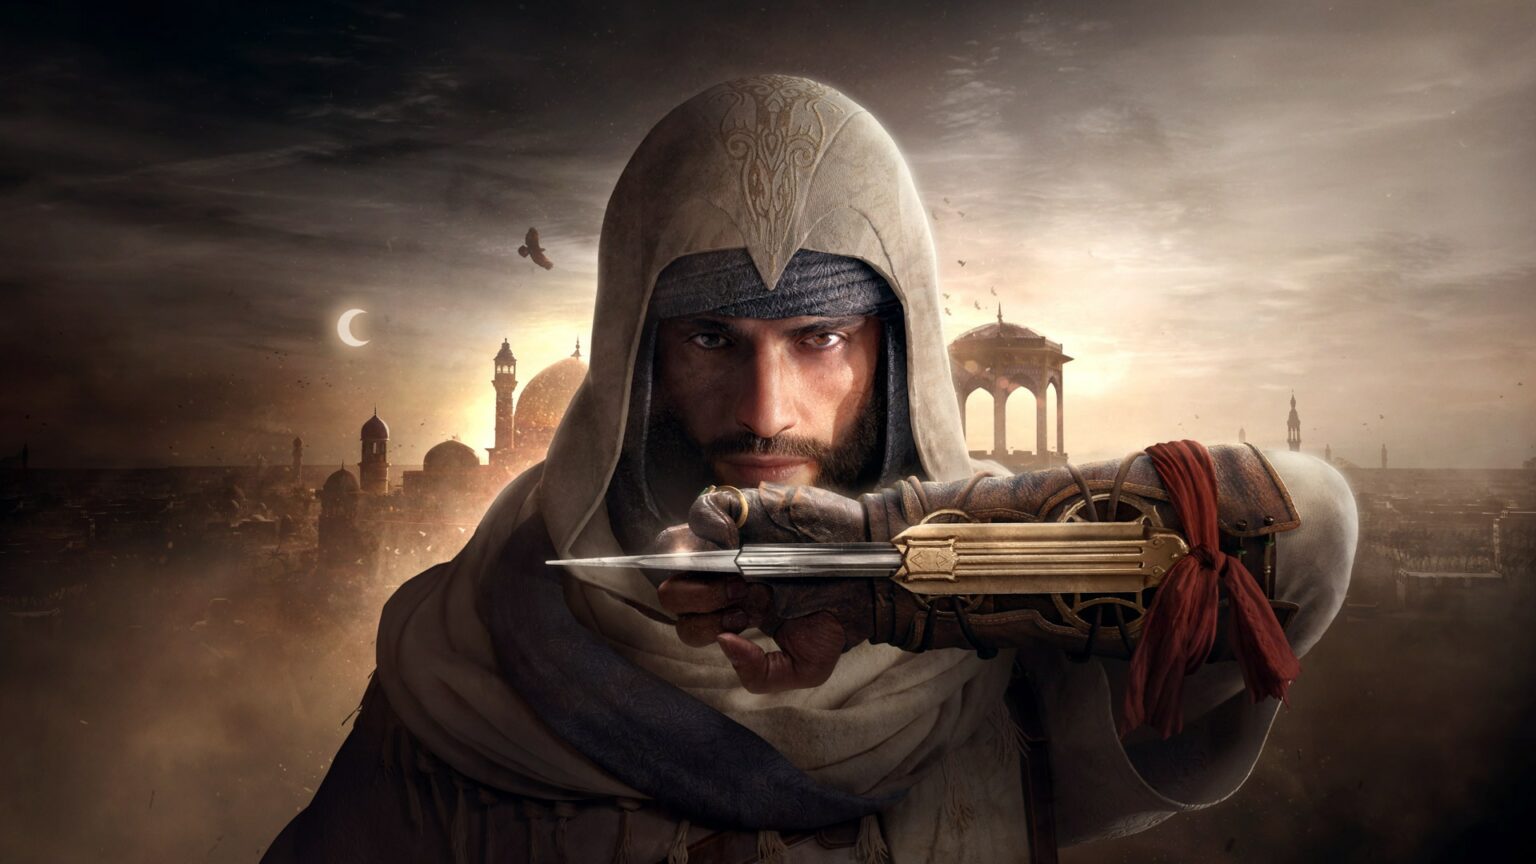 Es wird gemunkelt, dass sich das Cover von Assassin's Creed Mirage intern erneut verzögert